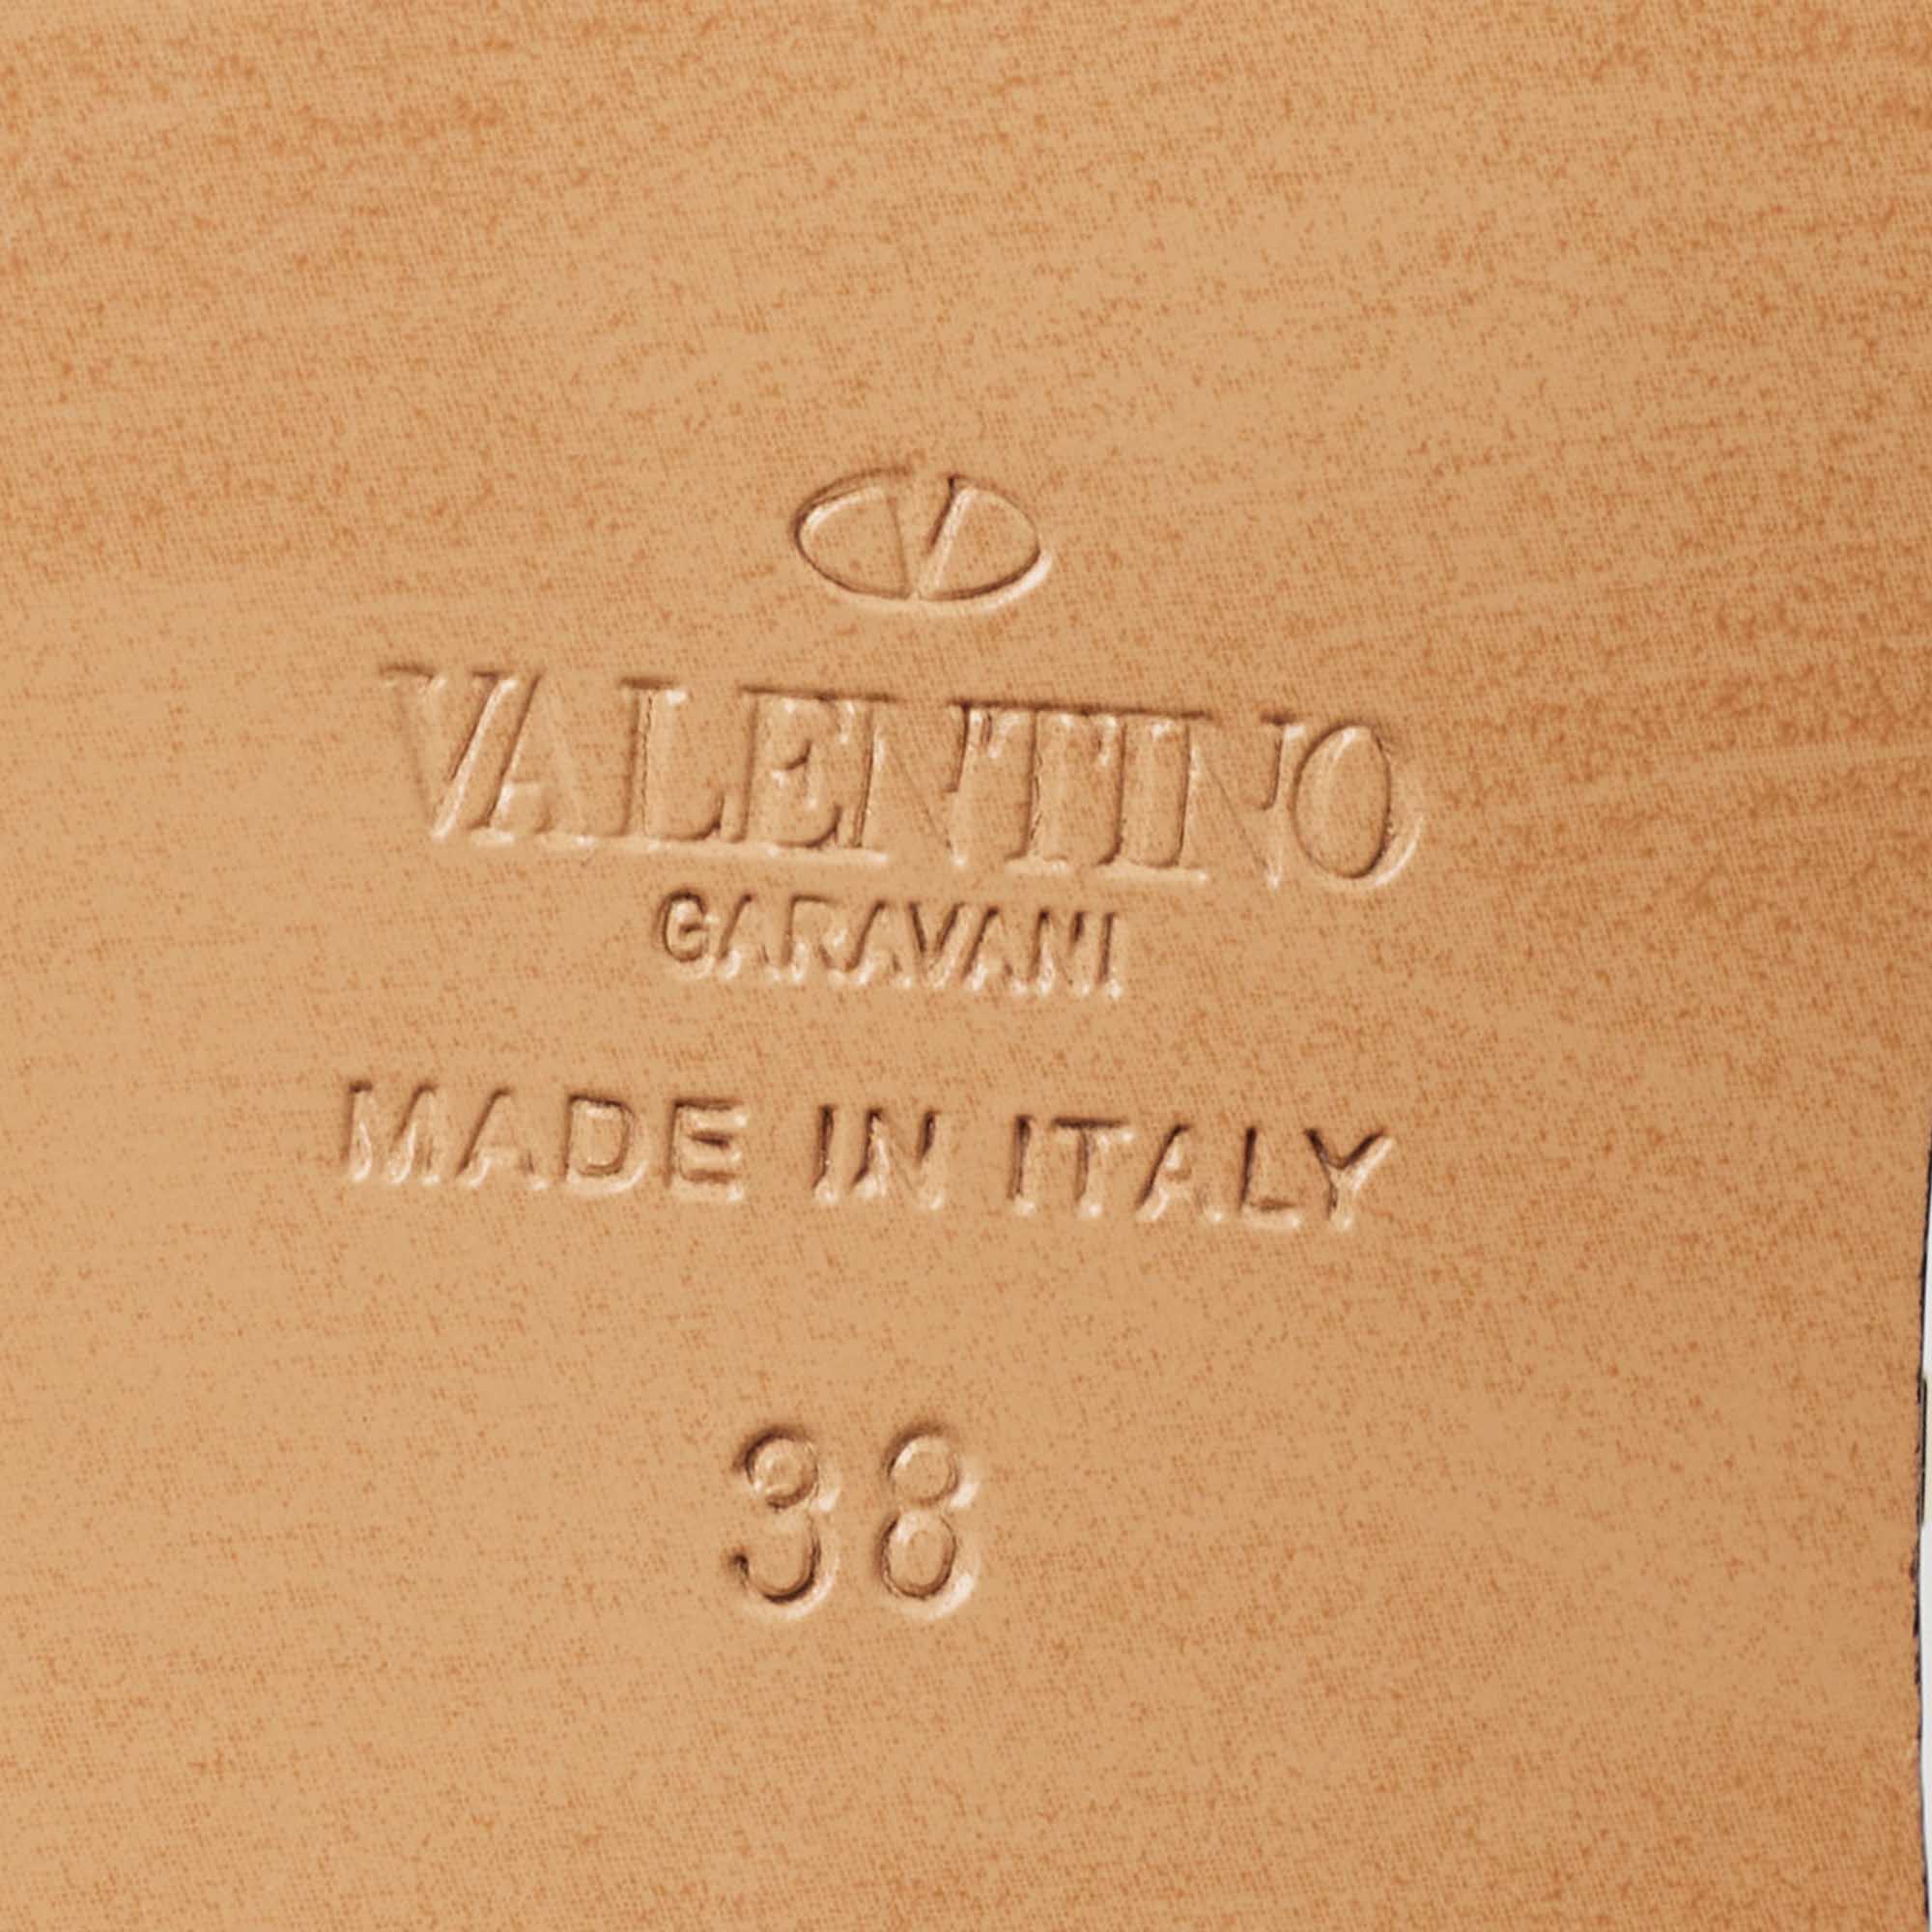 Valentino Brown Leather Soul Rockstud Slide Sandals Size 38